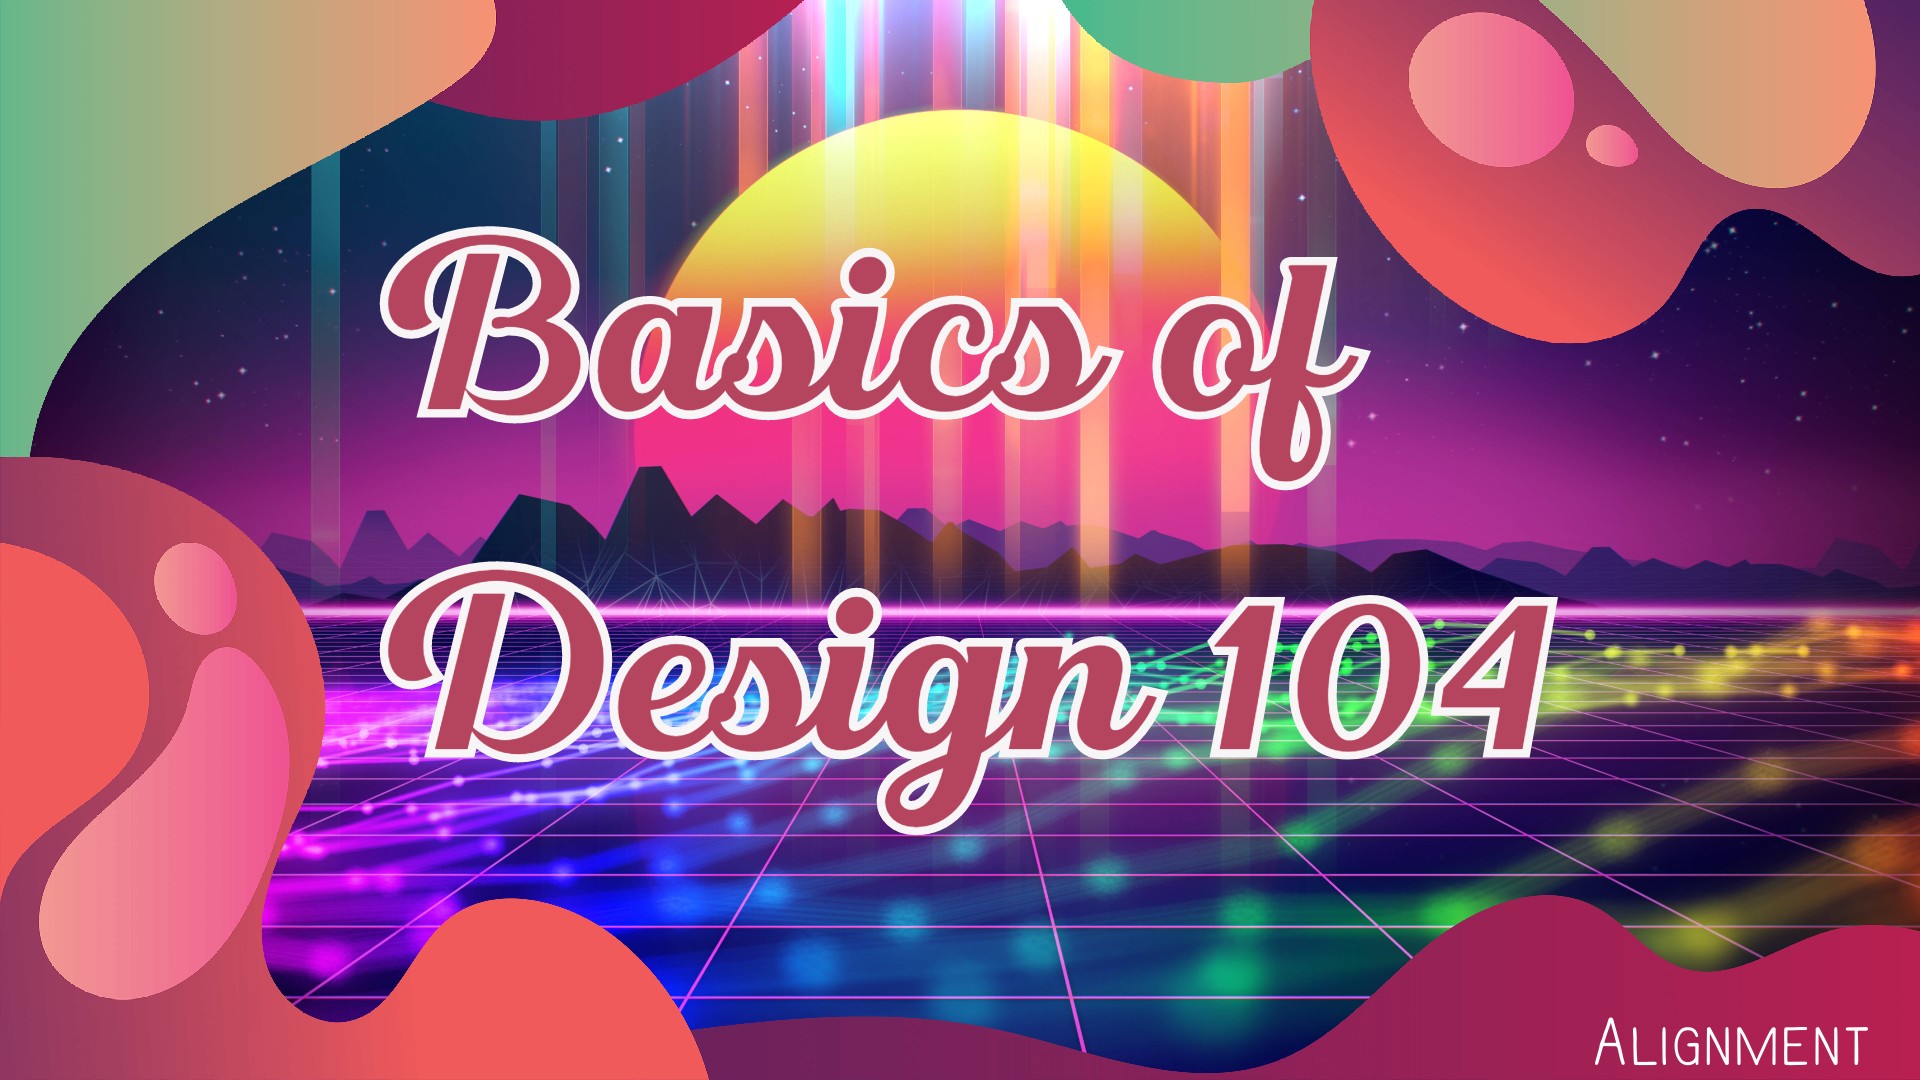 Basics of Design 104: Alignment